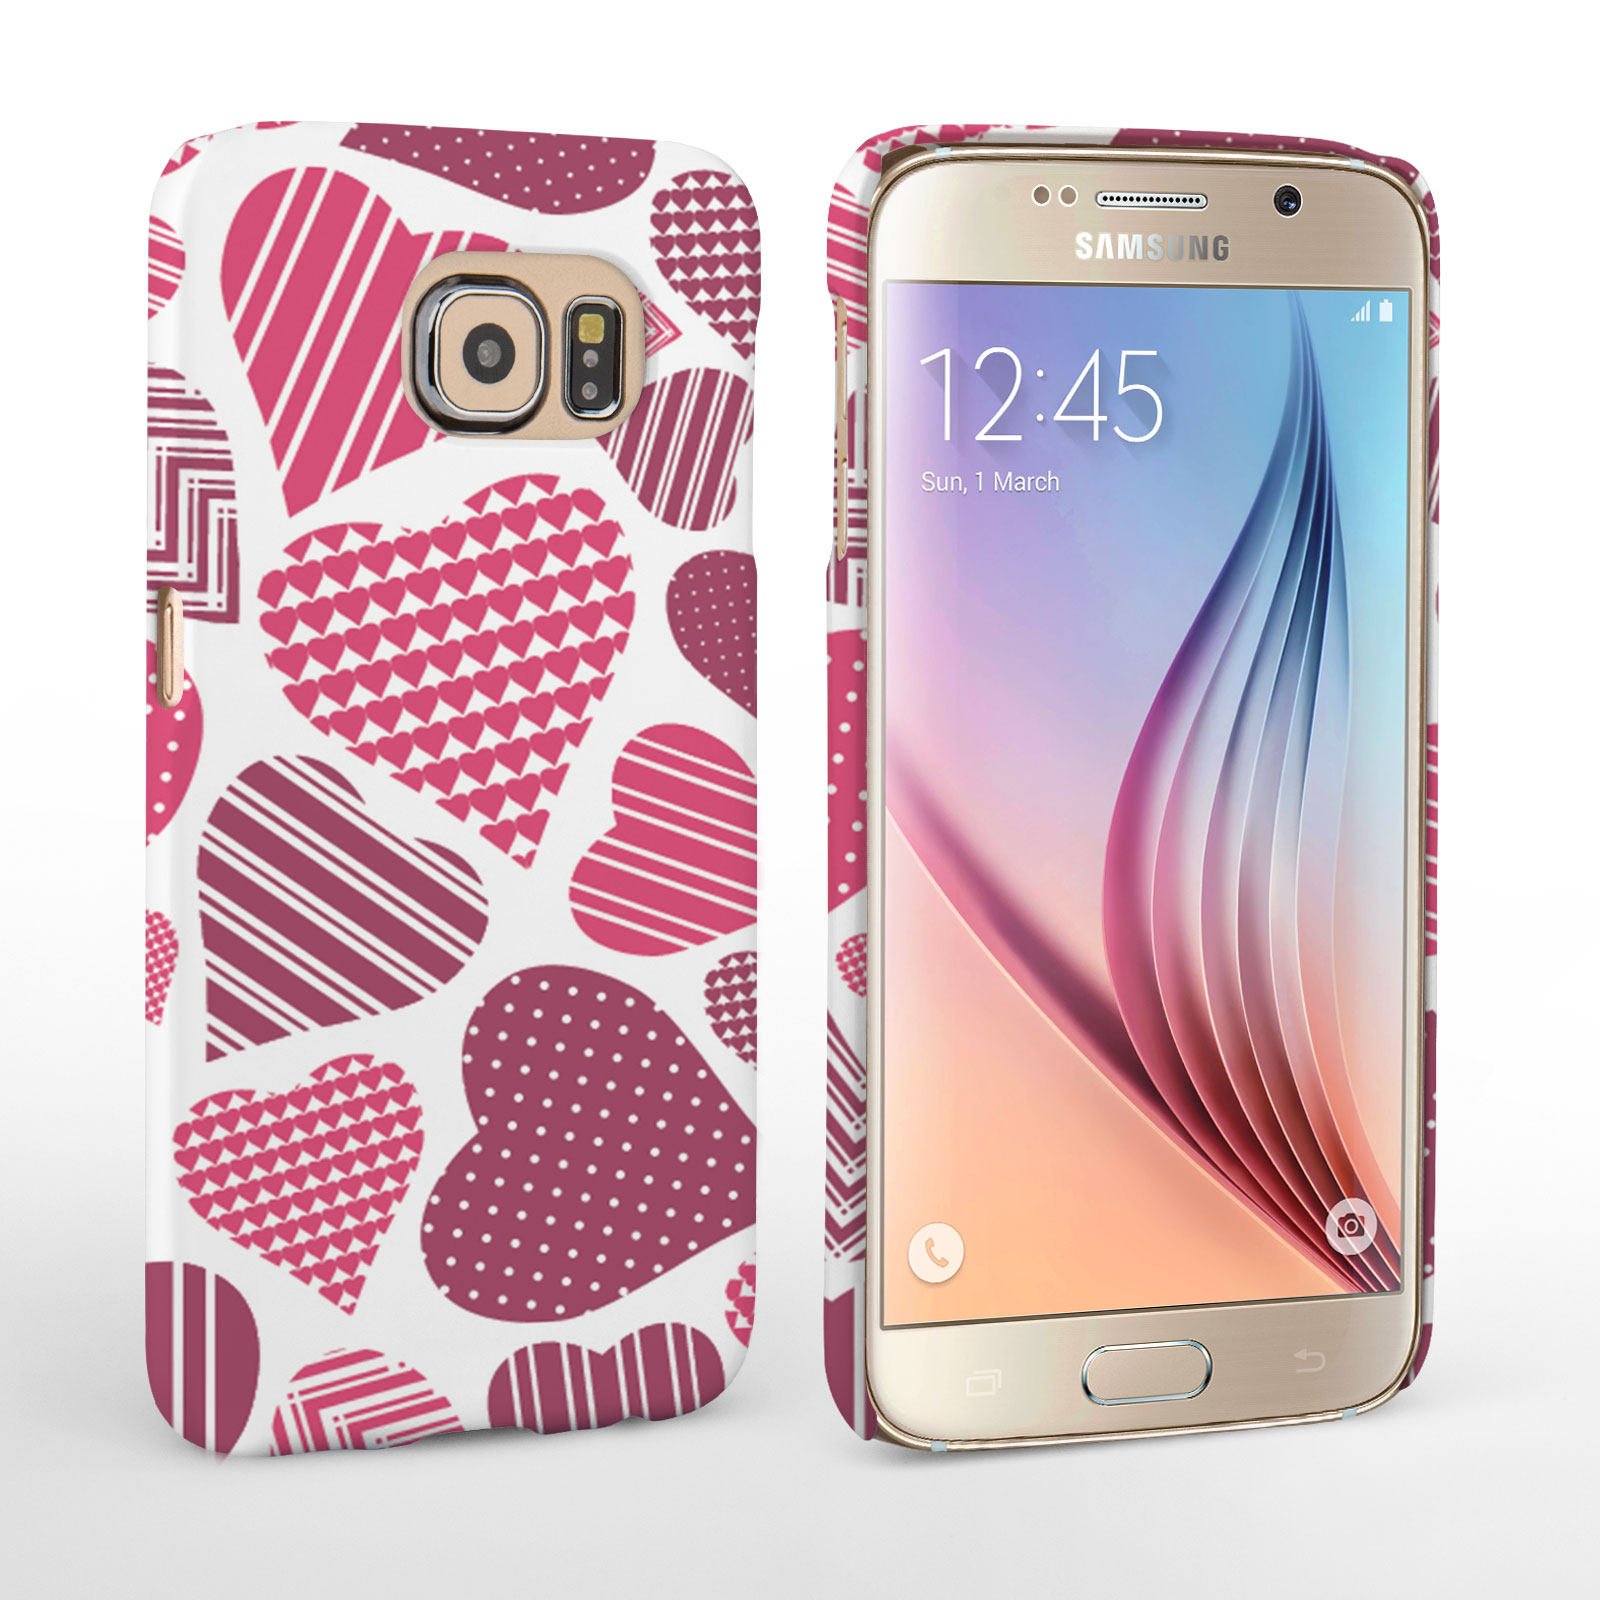 Caseflex Samsung Galaxy S6 Love Heart Pattern Case